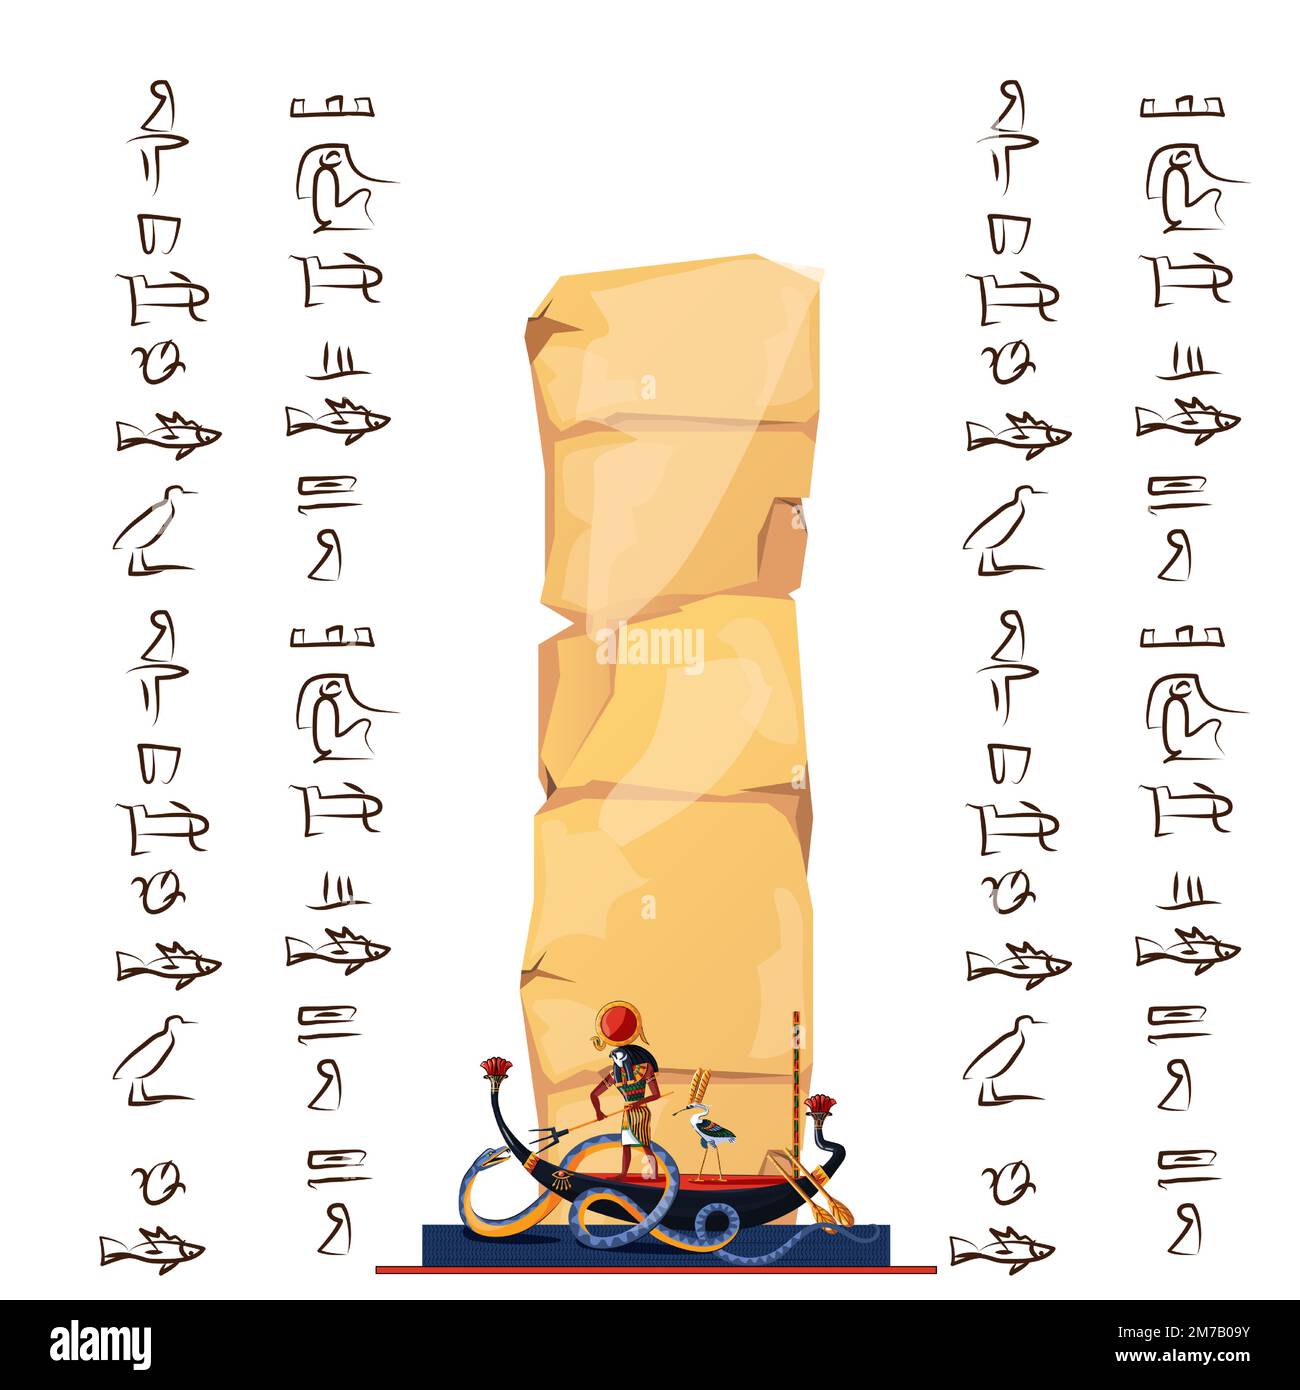 Der alte ägyptische Papyrus-Cartoon-Vektor mit Hieroglyphen und ägyptischen Kultursymbolen, Ra, sonnengott bei Nacht segelt im Boot auf einem unterirdischen Fluss und kämpft mit dem Chaos gott Schlange Apophis Stock Vektor